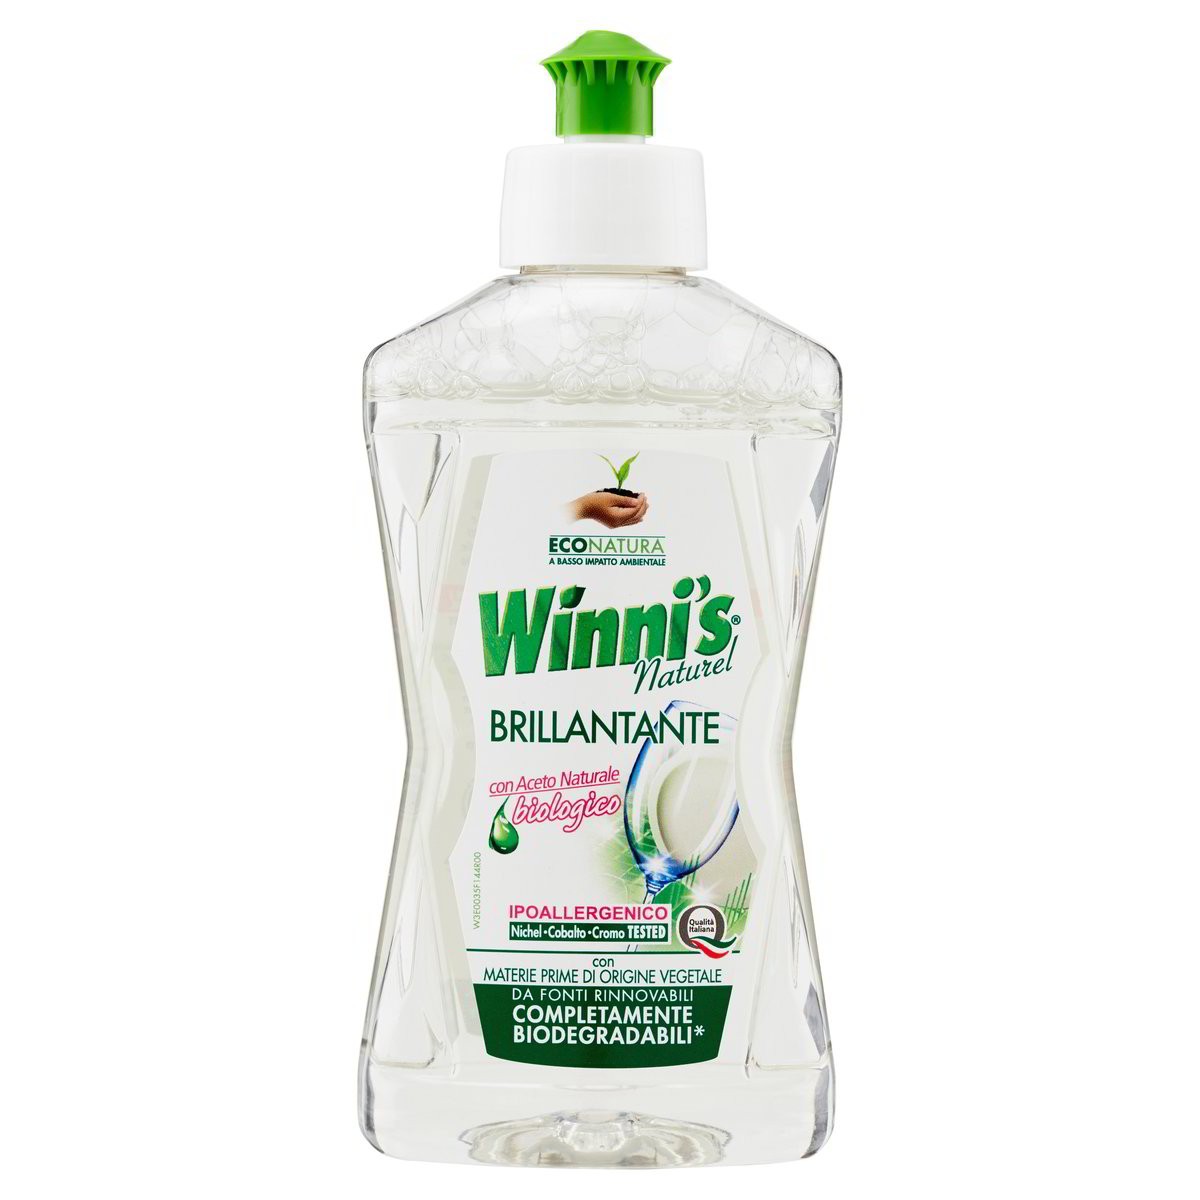 Winni's Naturel Brillantante